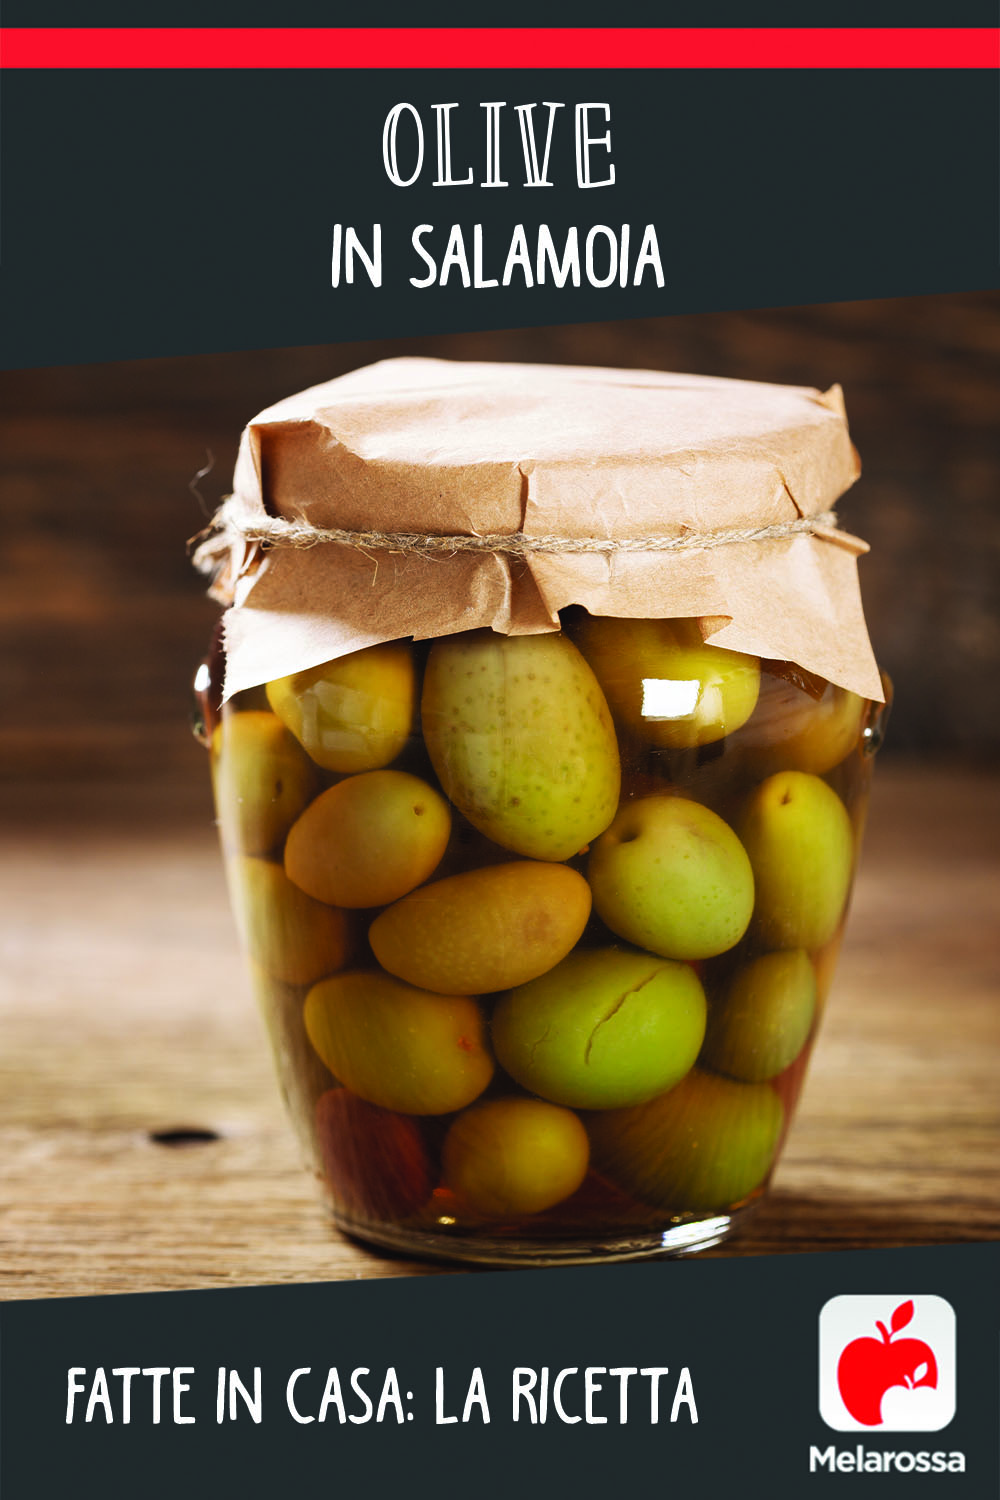 olive in salamoia fatte in casa